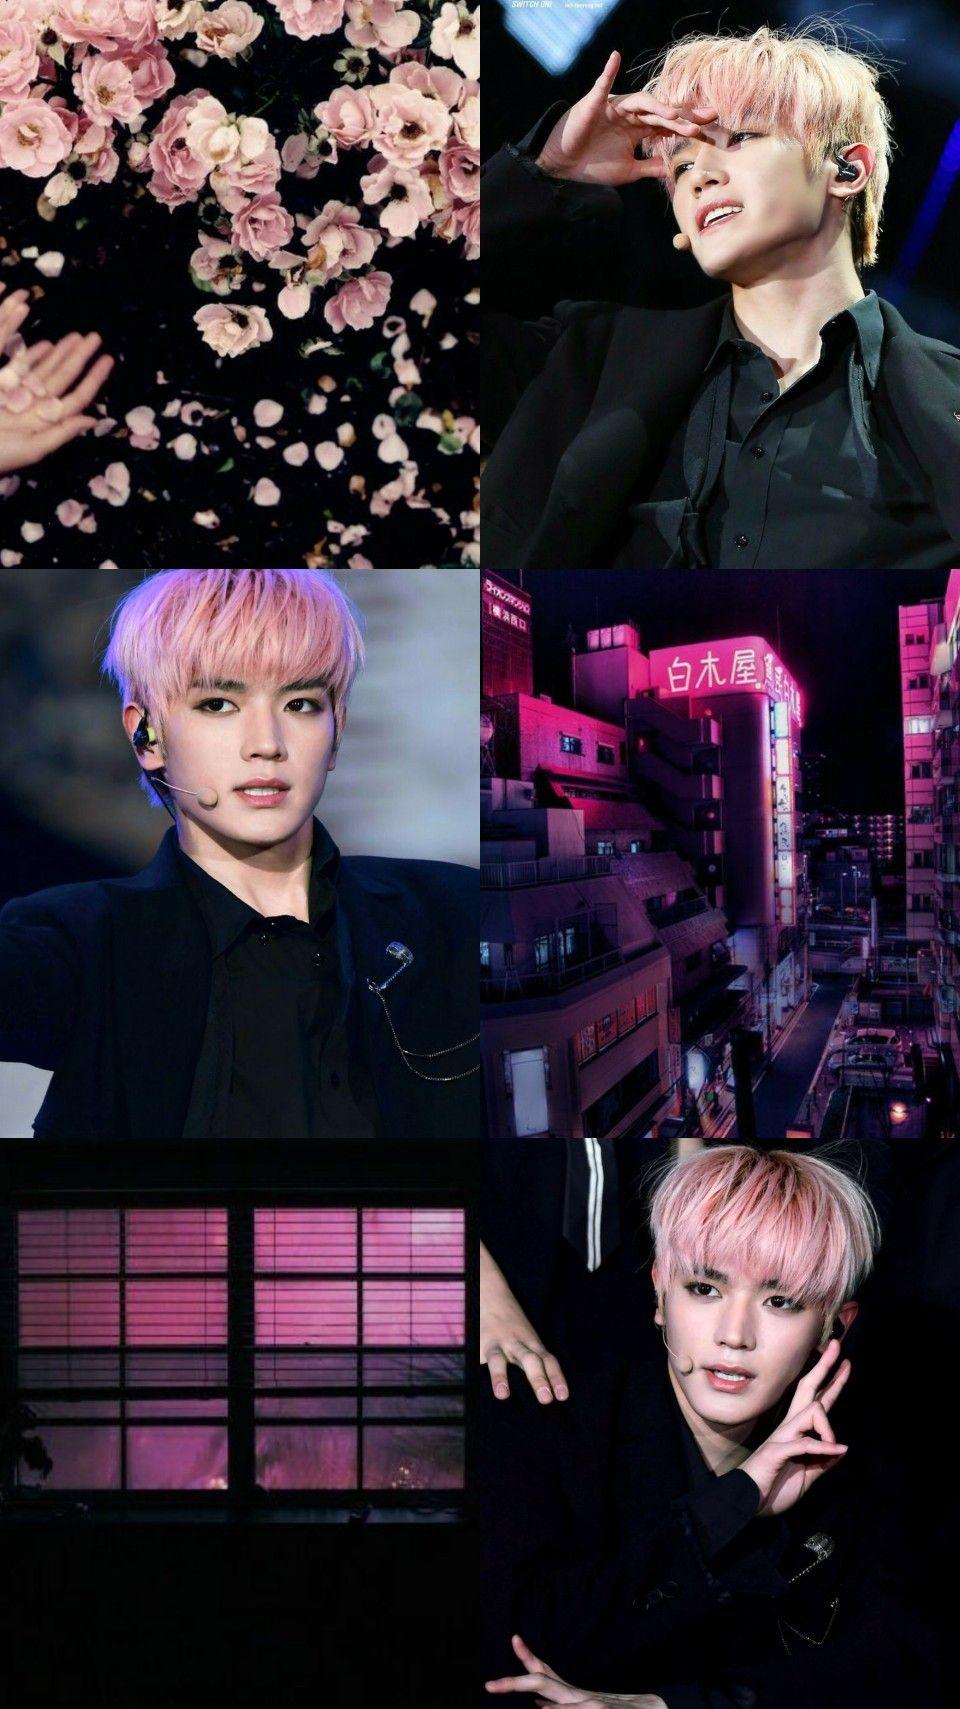 Pink & black aesthetic #TAEYONG #NCT #AESTHETIC. 벨 di 2019